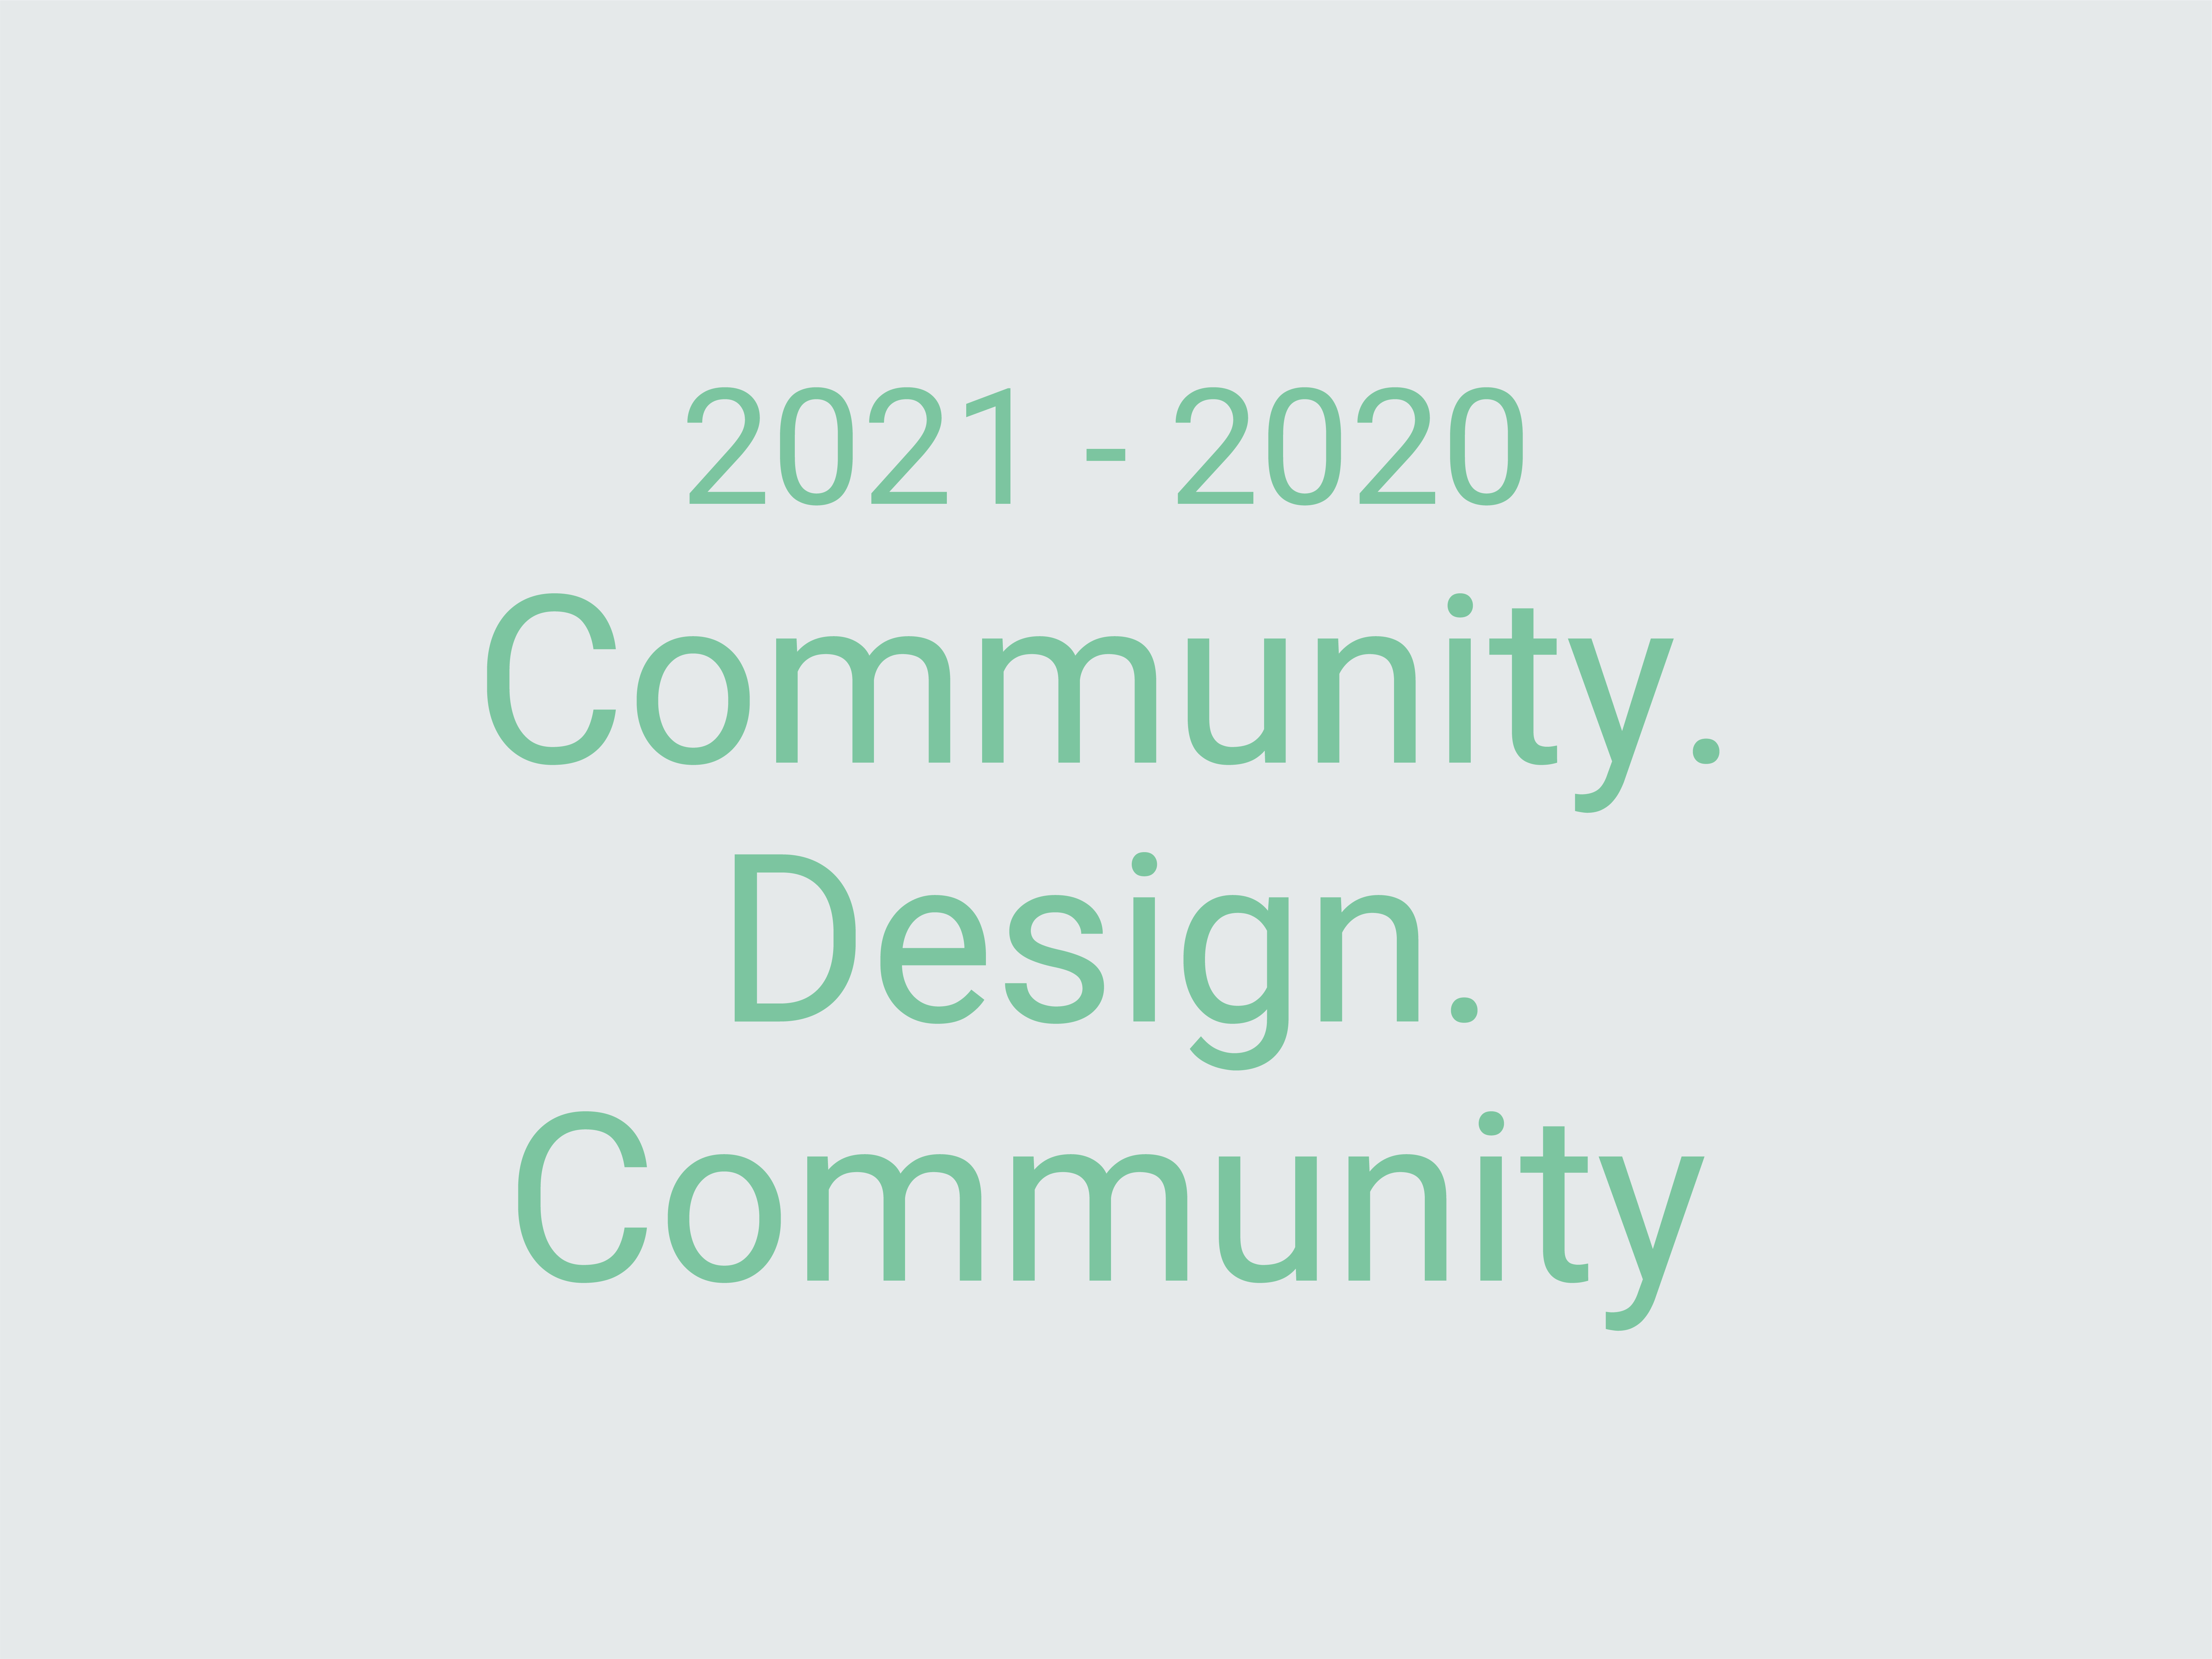 https://humanfirst.hac.ac.il/%D7%AA%D7%A2%D7%A8%D7%95%D7%9B%D7%95%D7%AA-%D7%A7%D7%95%D7%93%D7%9E%D7%95%D7%AA-previous-exhibitions/community-design-community-2021-2022/